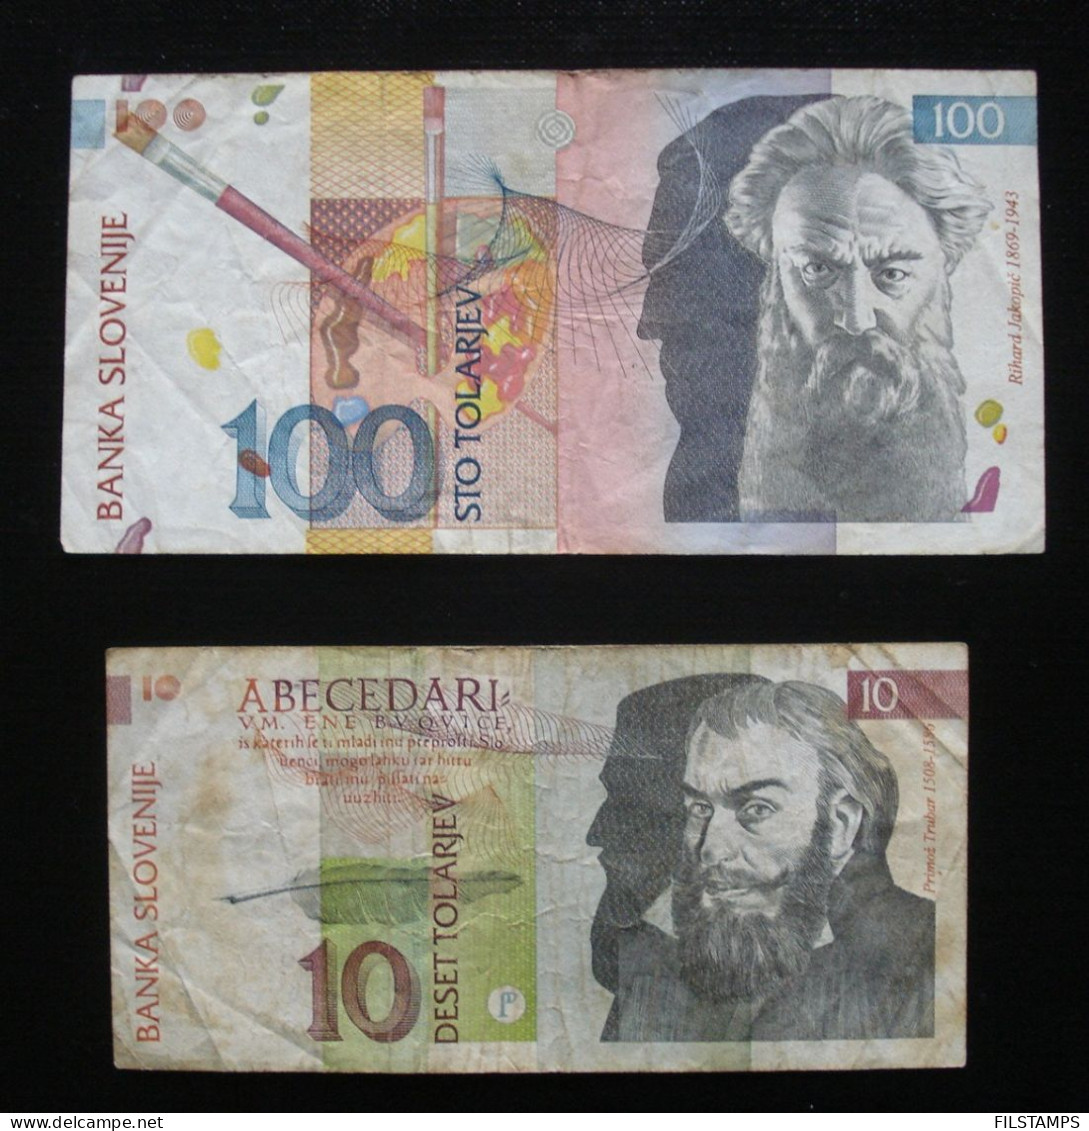 SLOVENIA 100 TOLARJEV, 10 TOLARJEV 1992. BANKNOTES. - Slovénie